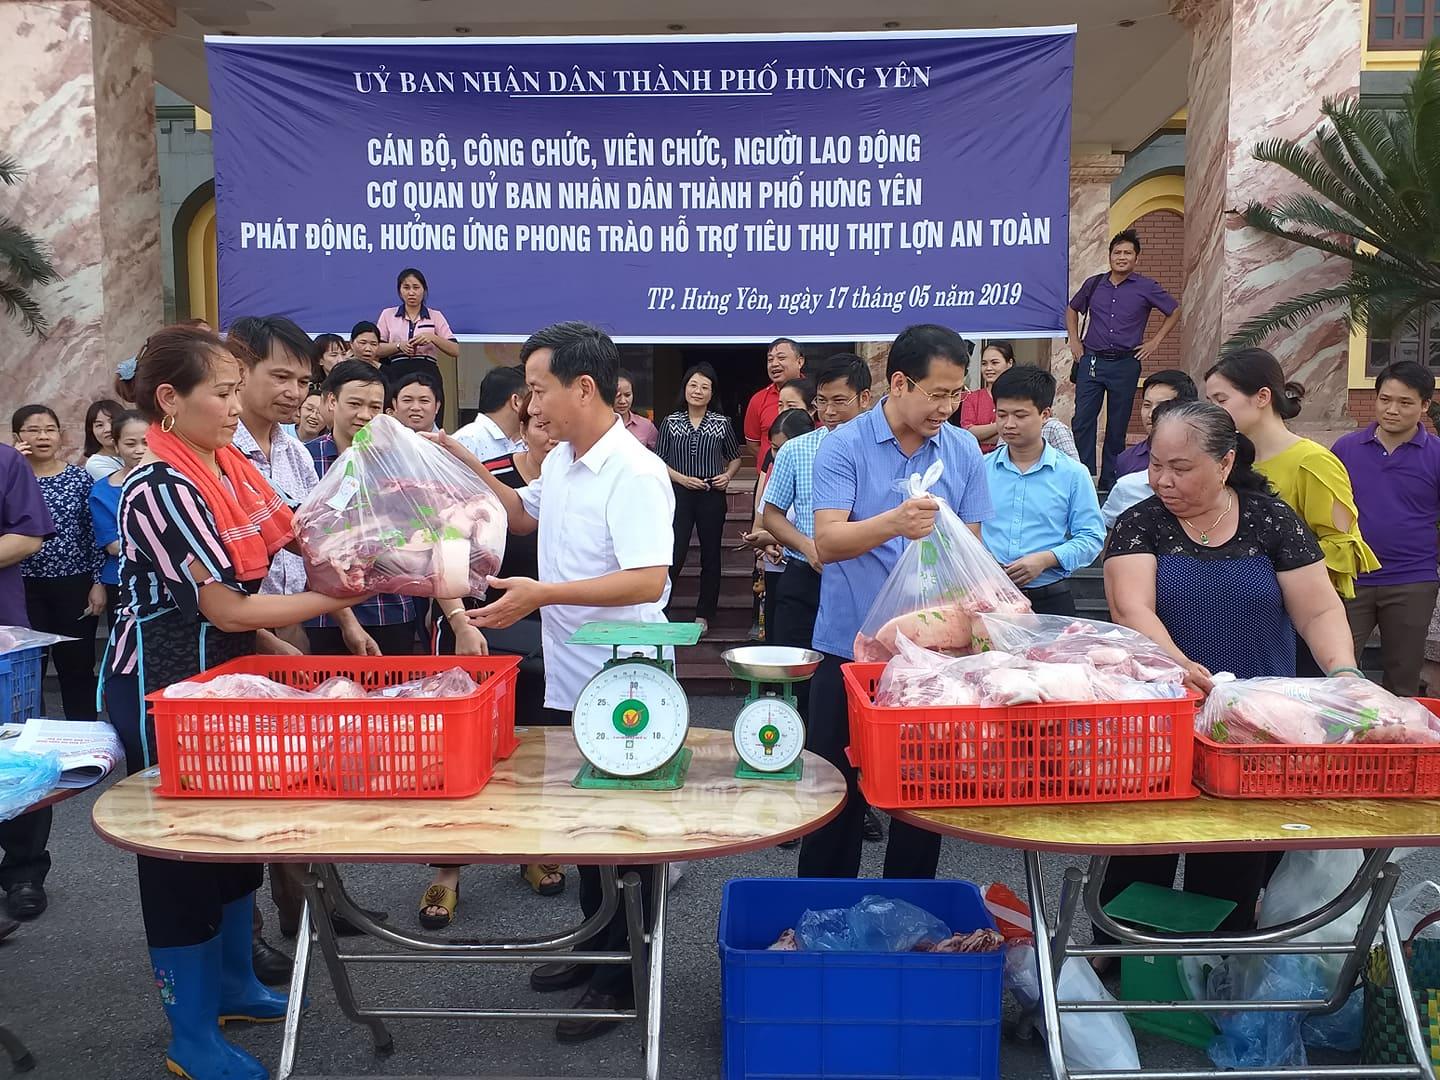 Ủy Ban nhân dân thành phố Hưng Yên phát động, hưởng ứng phong trào hỗ trợ tiêu thụ lợn an toàn ủng hộ người chăn nuôi